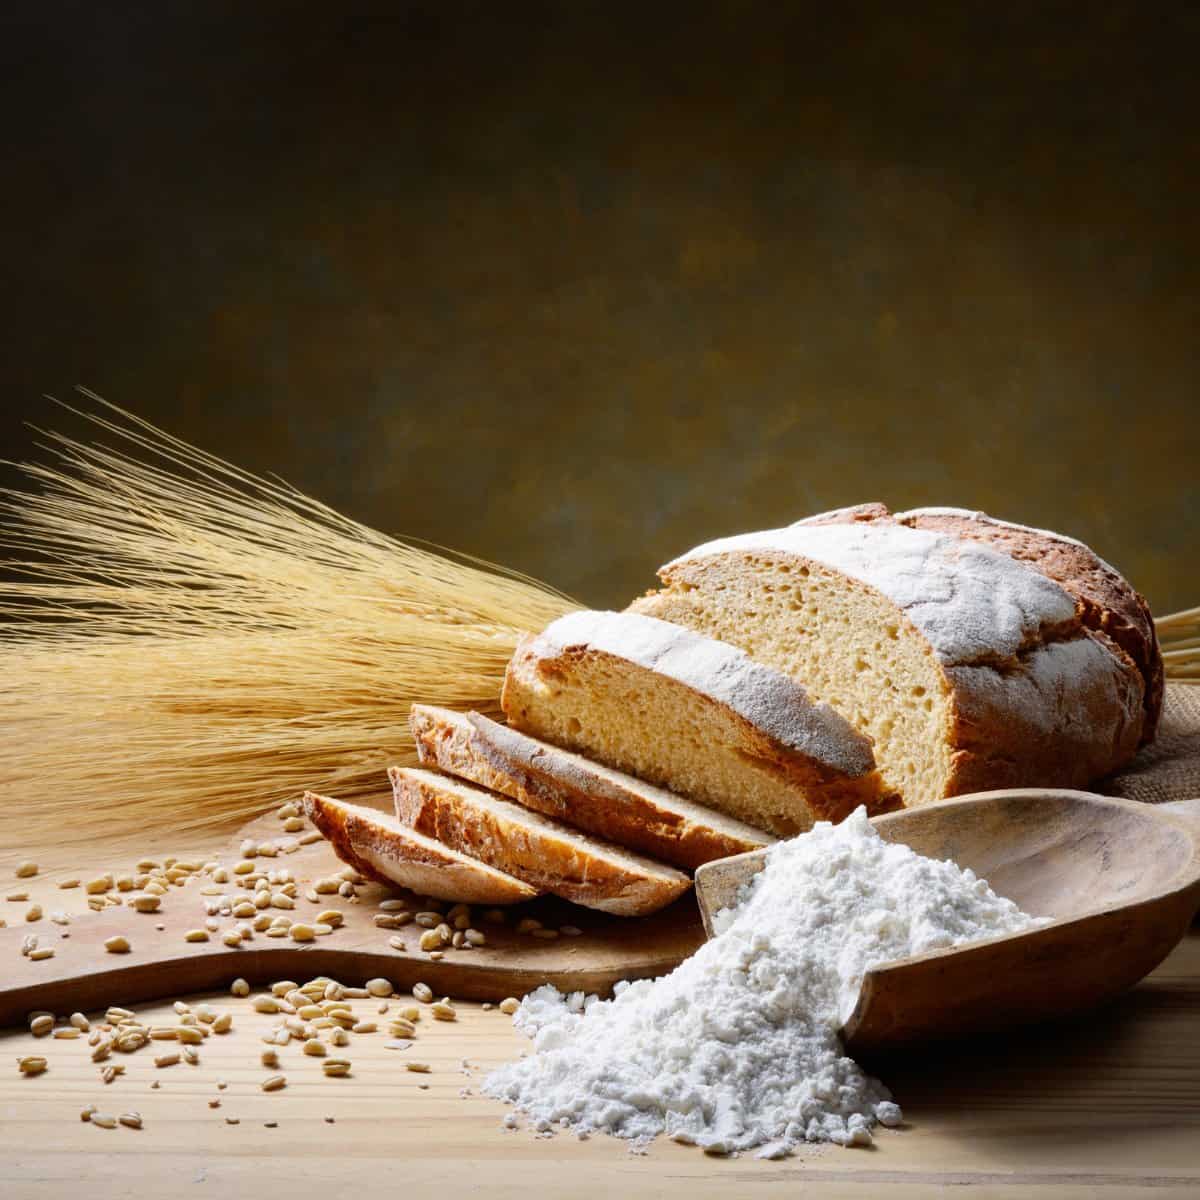 What is Einkorn flour